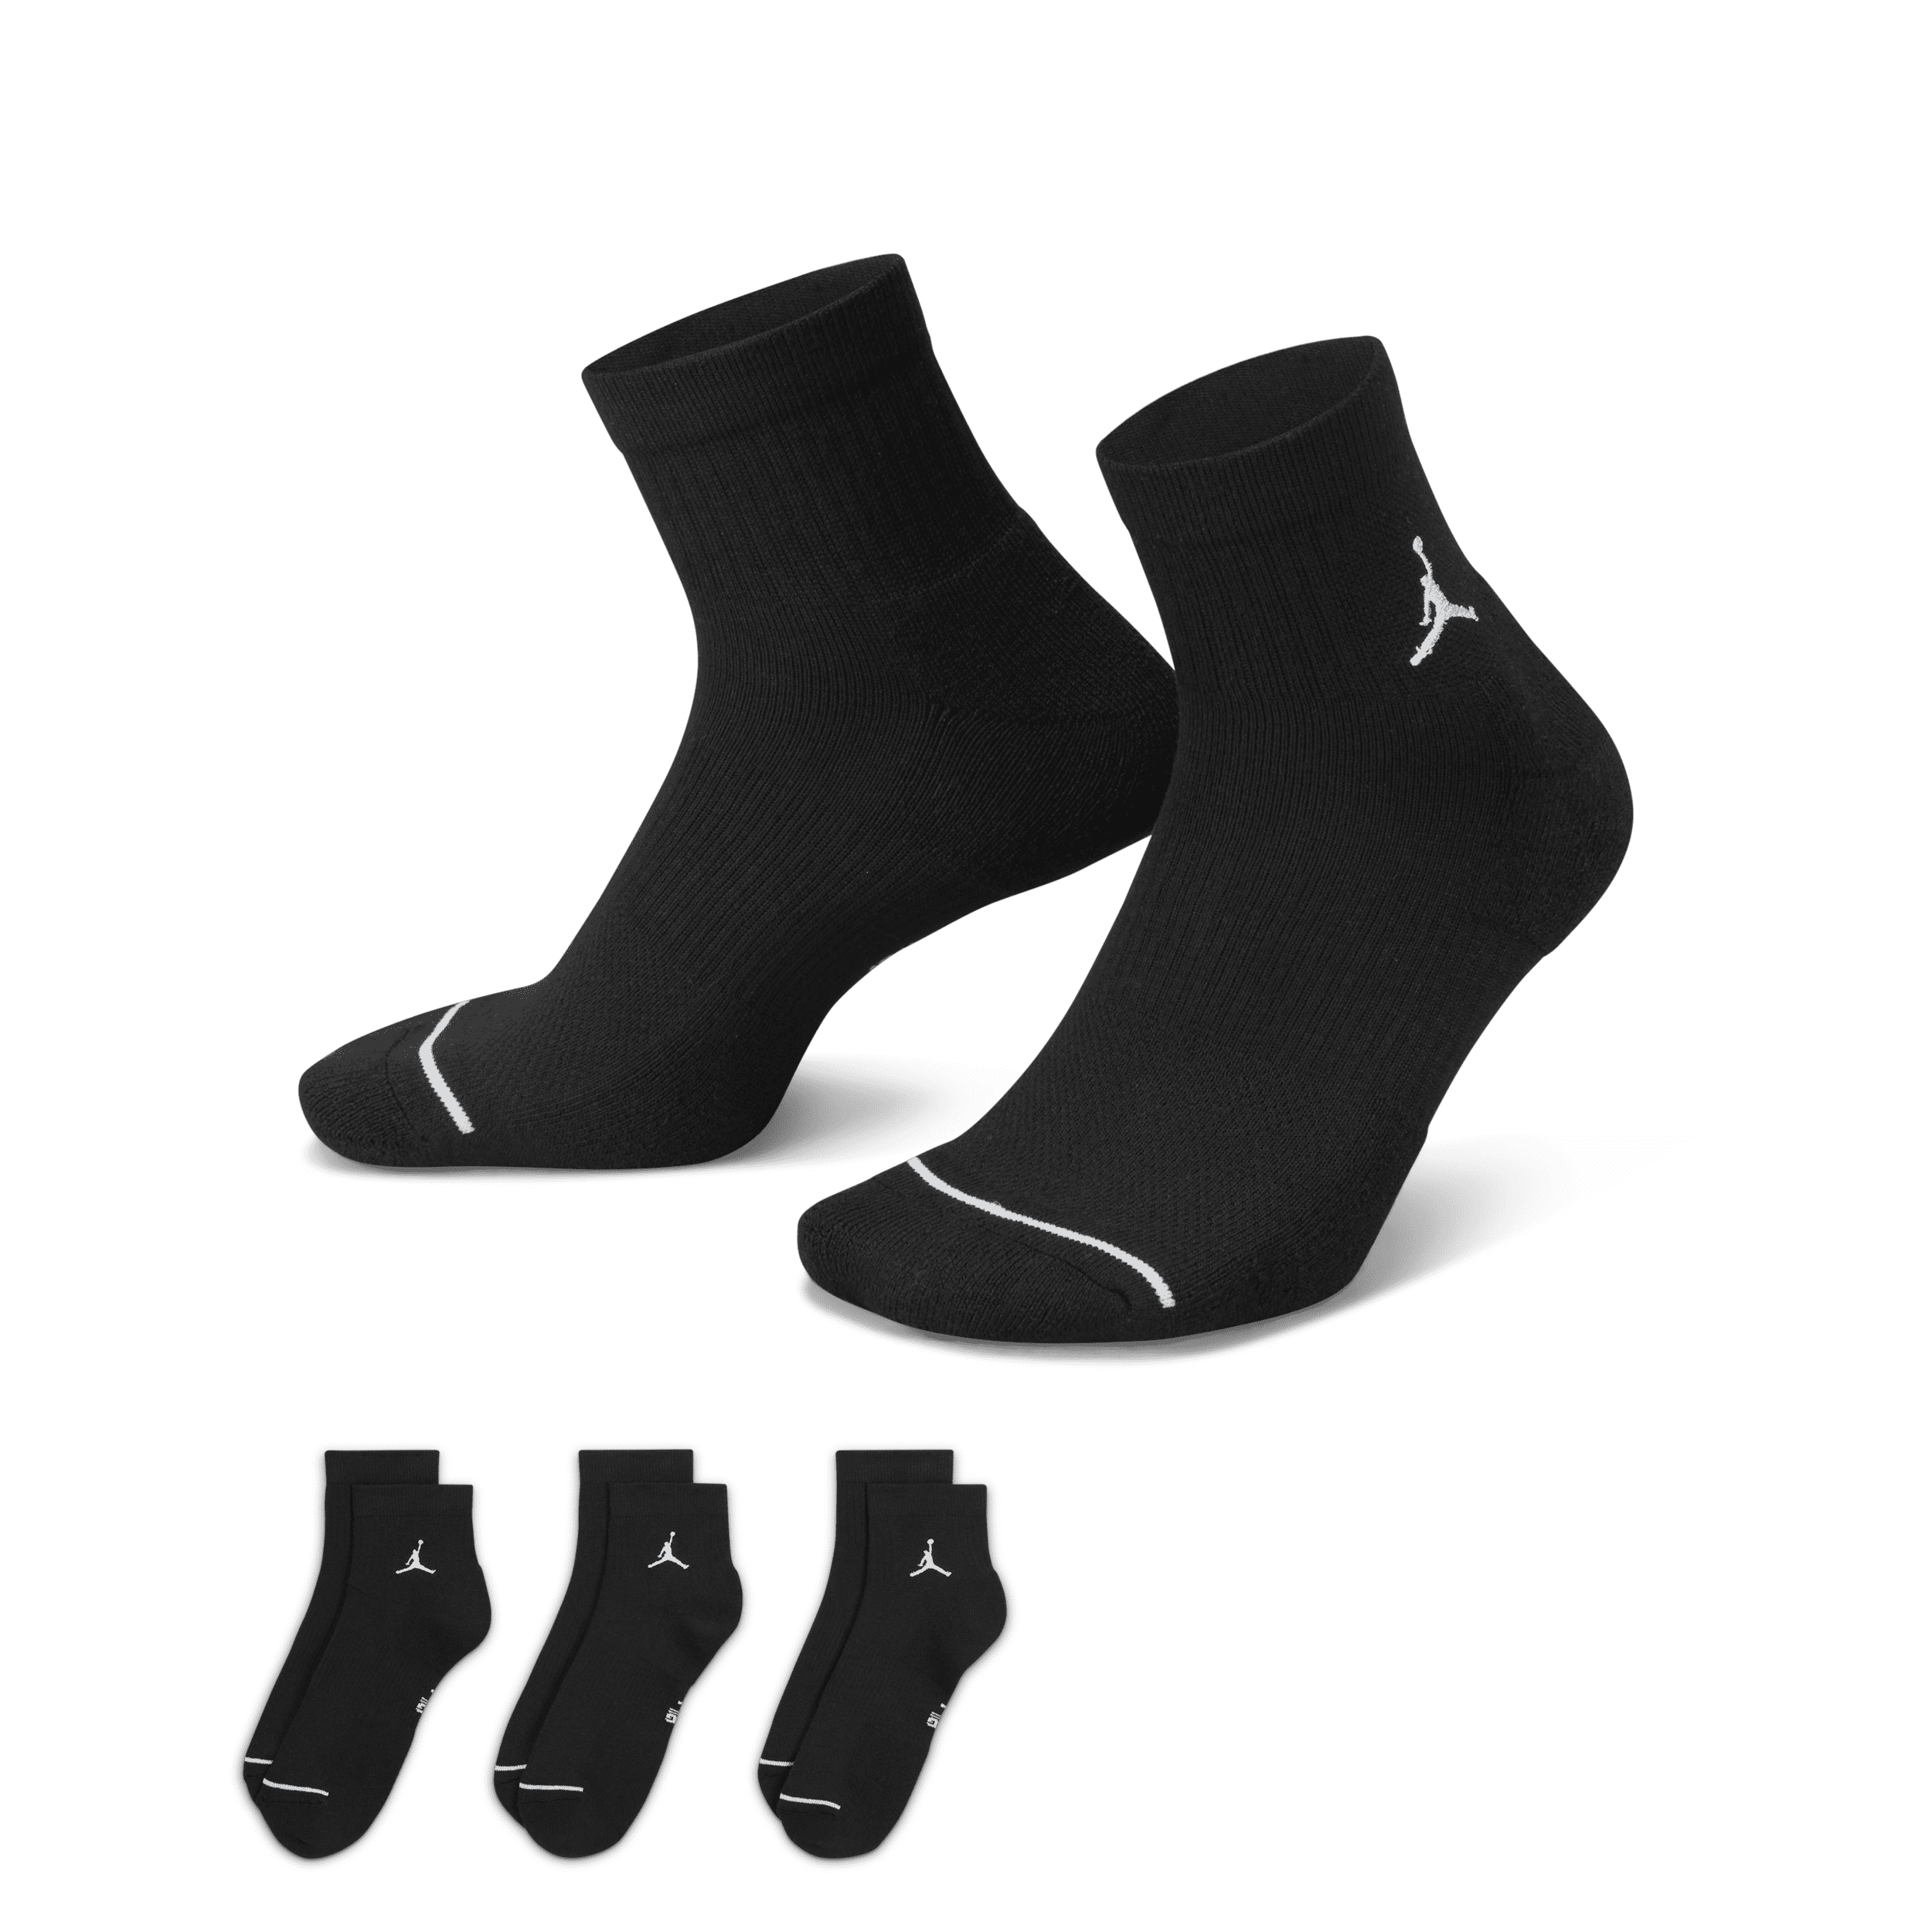 Nike Calze alla caviglia per tutti i giorni Jordan (3 paia) - Nero